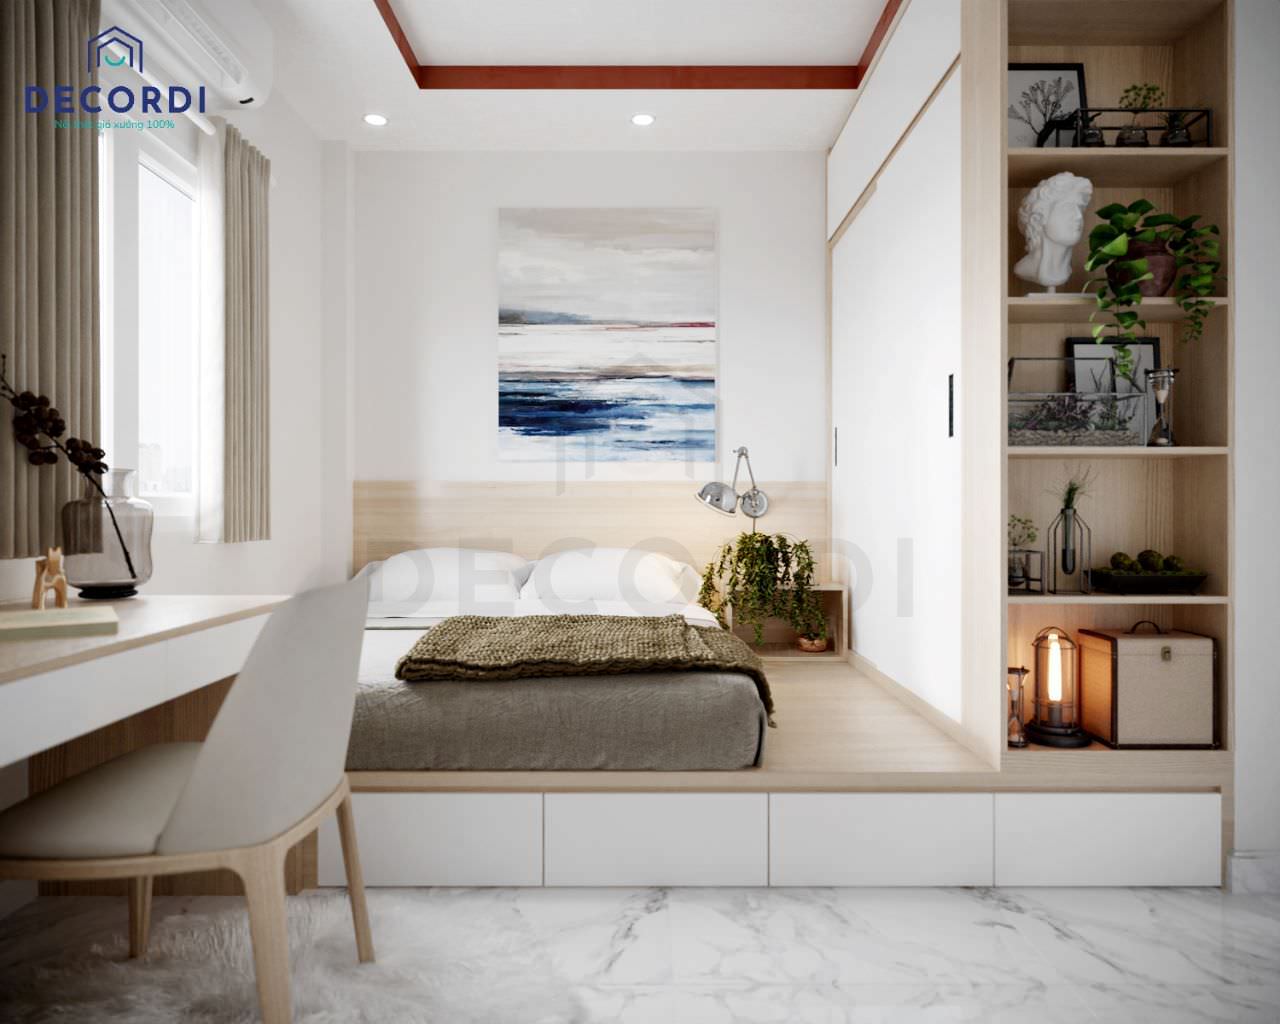 Thiết kế phòng ngủ phong cách hiện đại với giường ngủ dạng bục kết hợp tủ quần áo có kệ góc trang trí